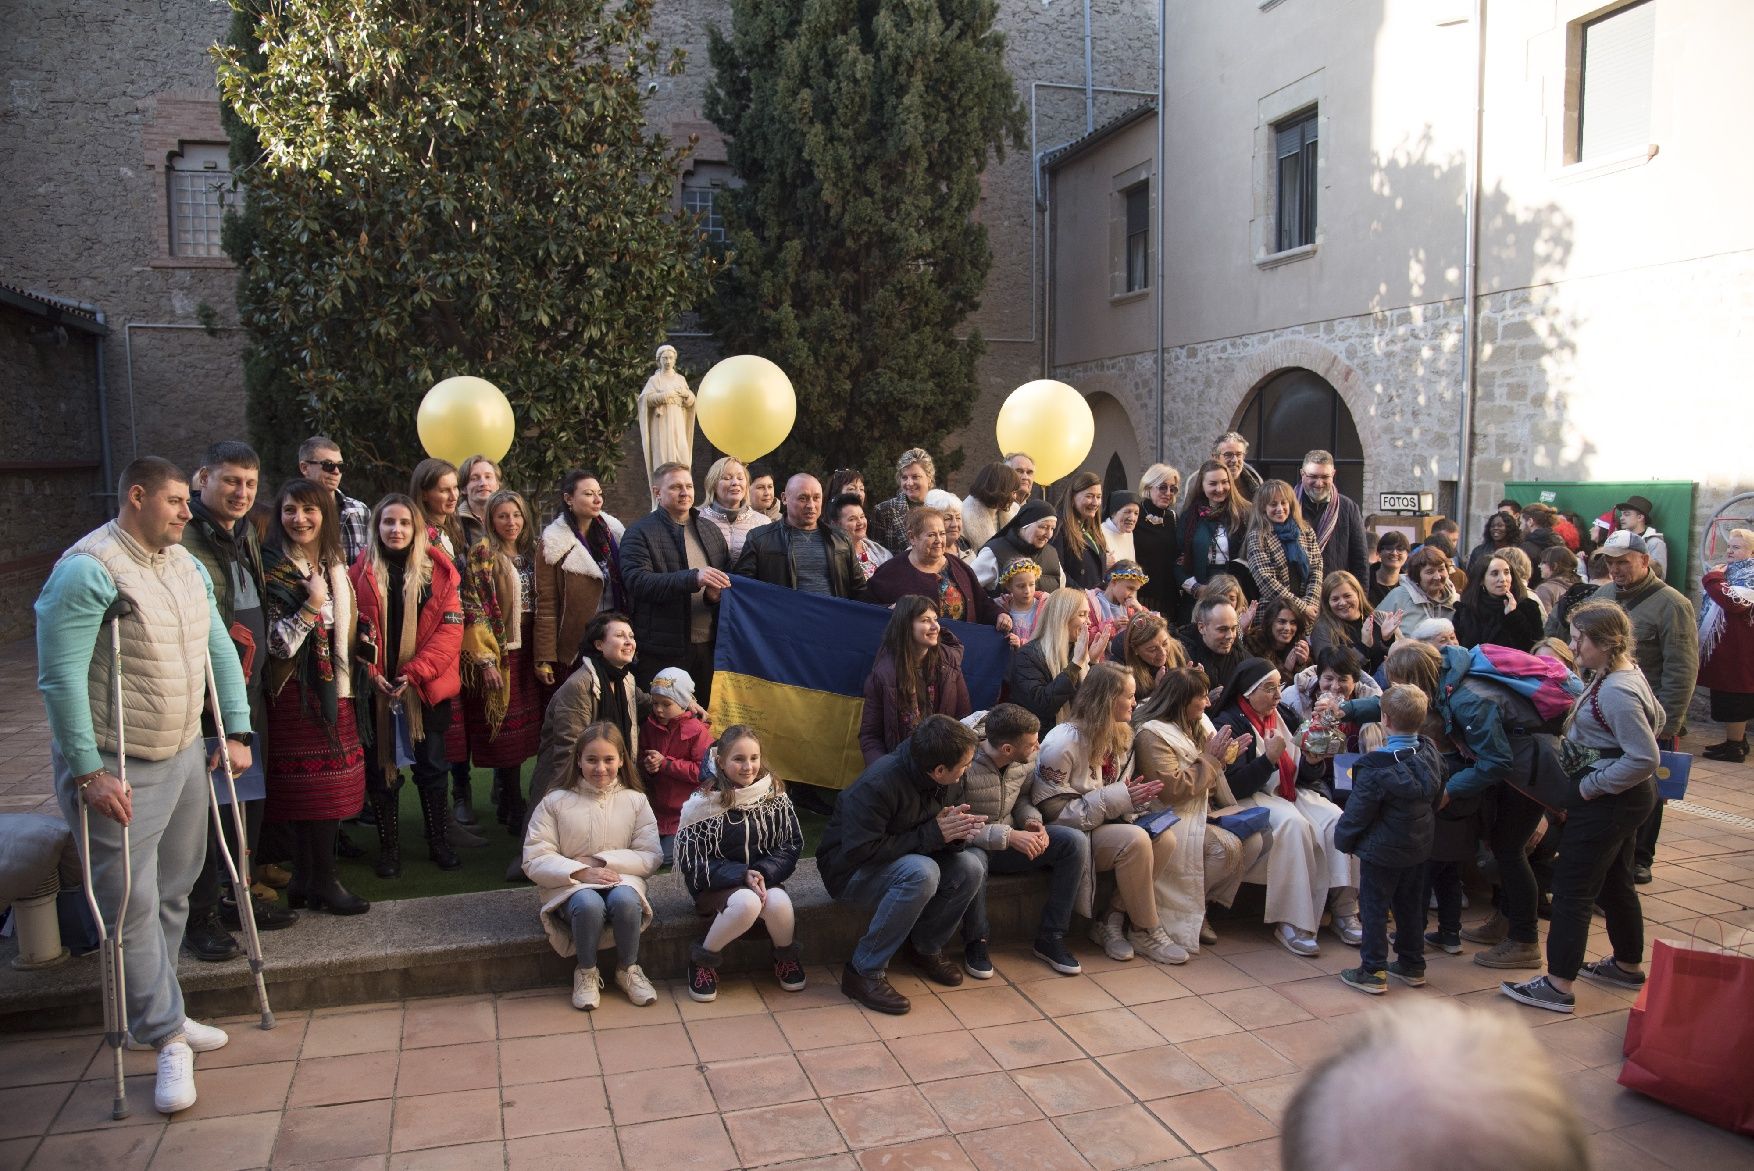 Les imatges de la celebració de centenars d'ucraïnesos al convent de Santa Clara